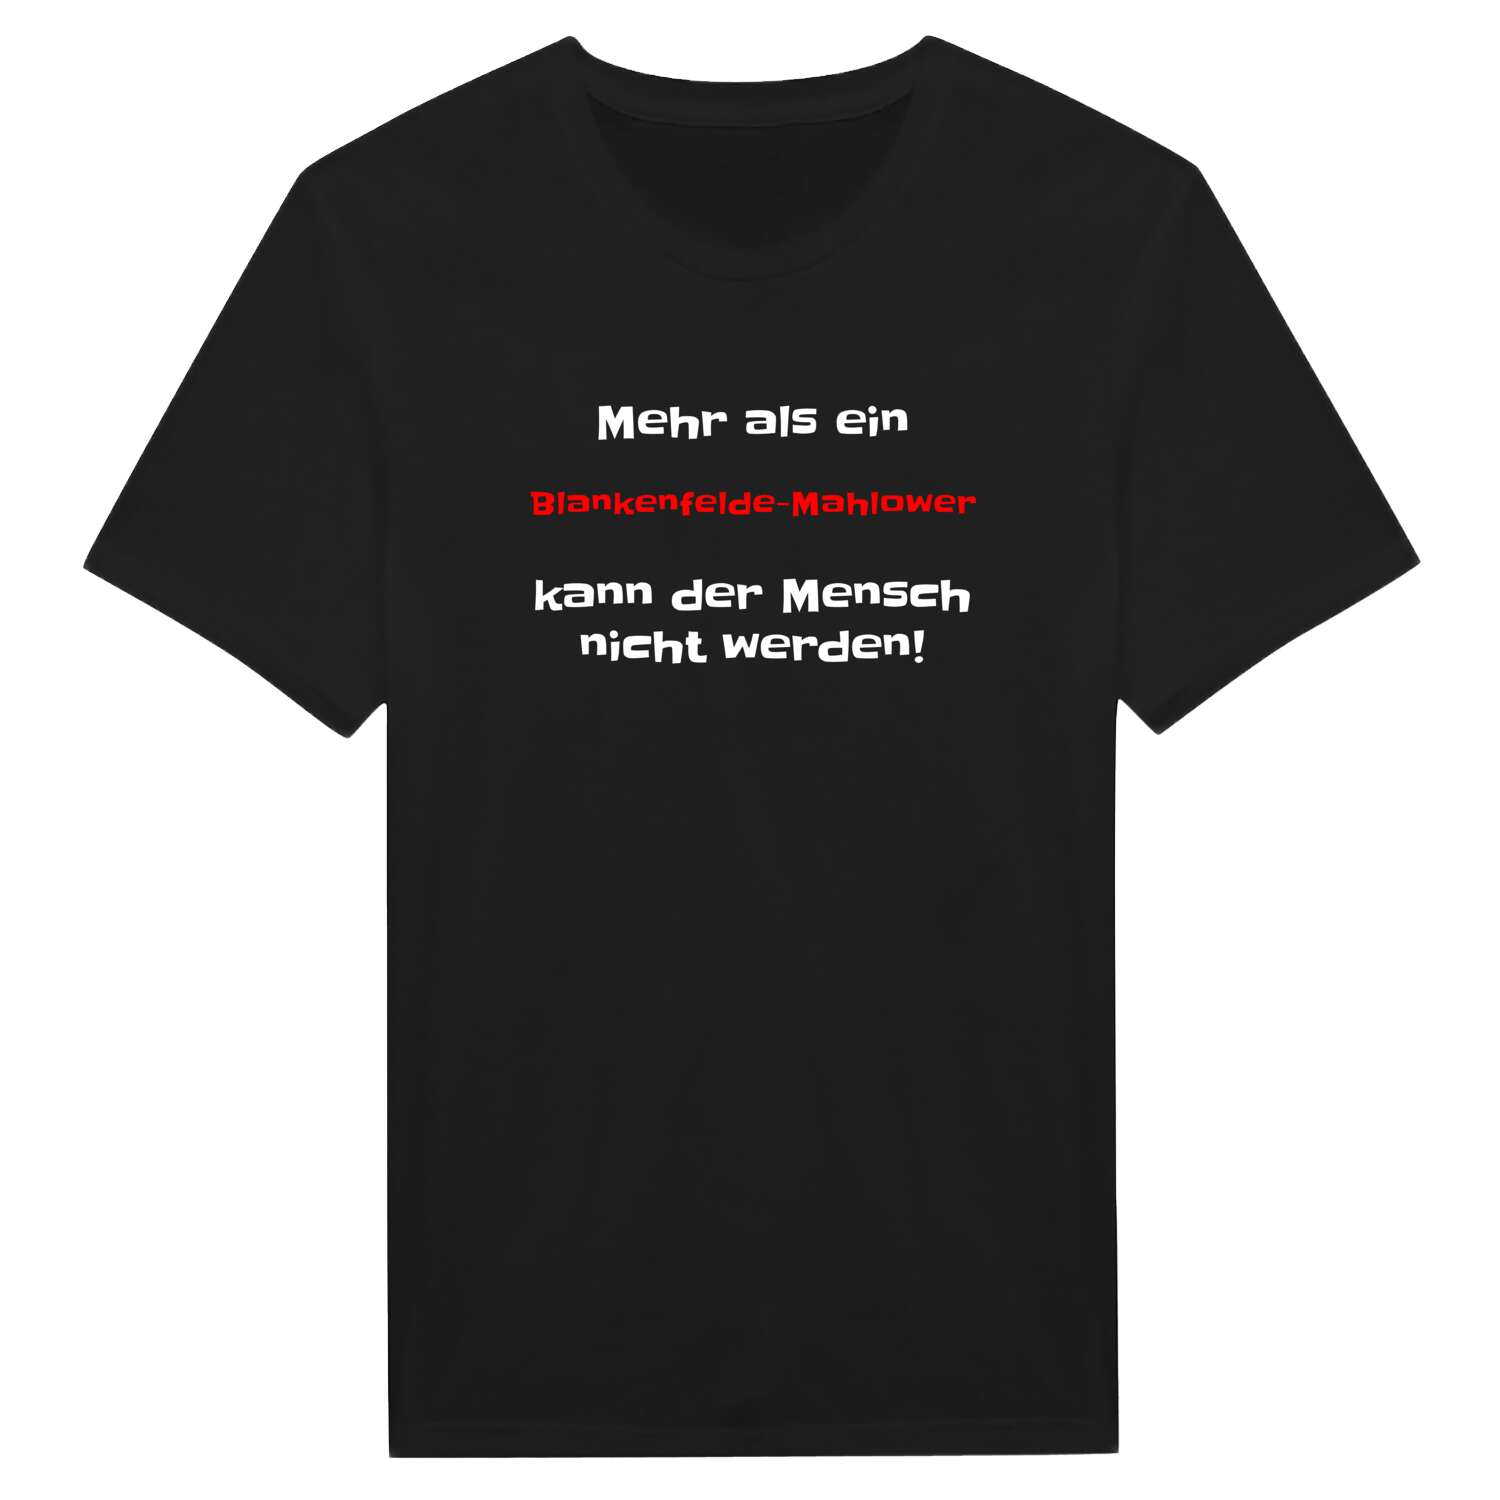 Blankenfelde-Mahlow T-Shirt »Mehr als ein«